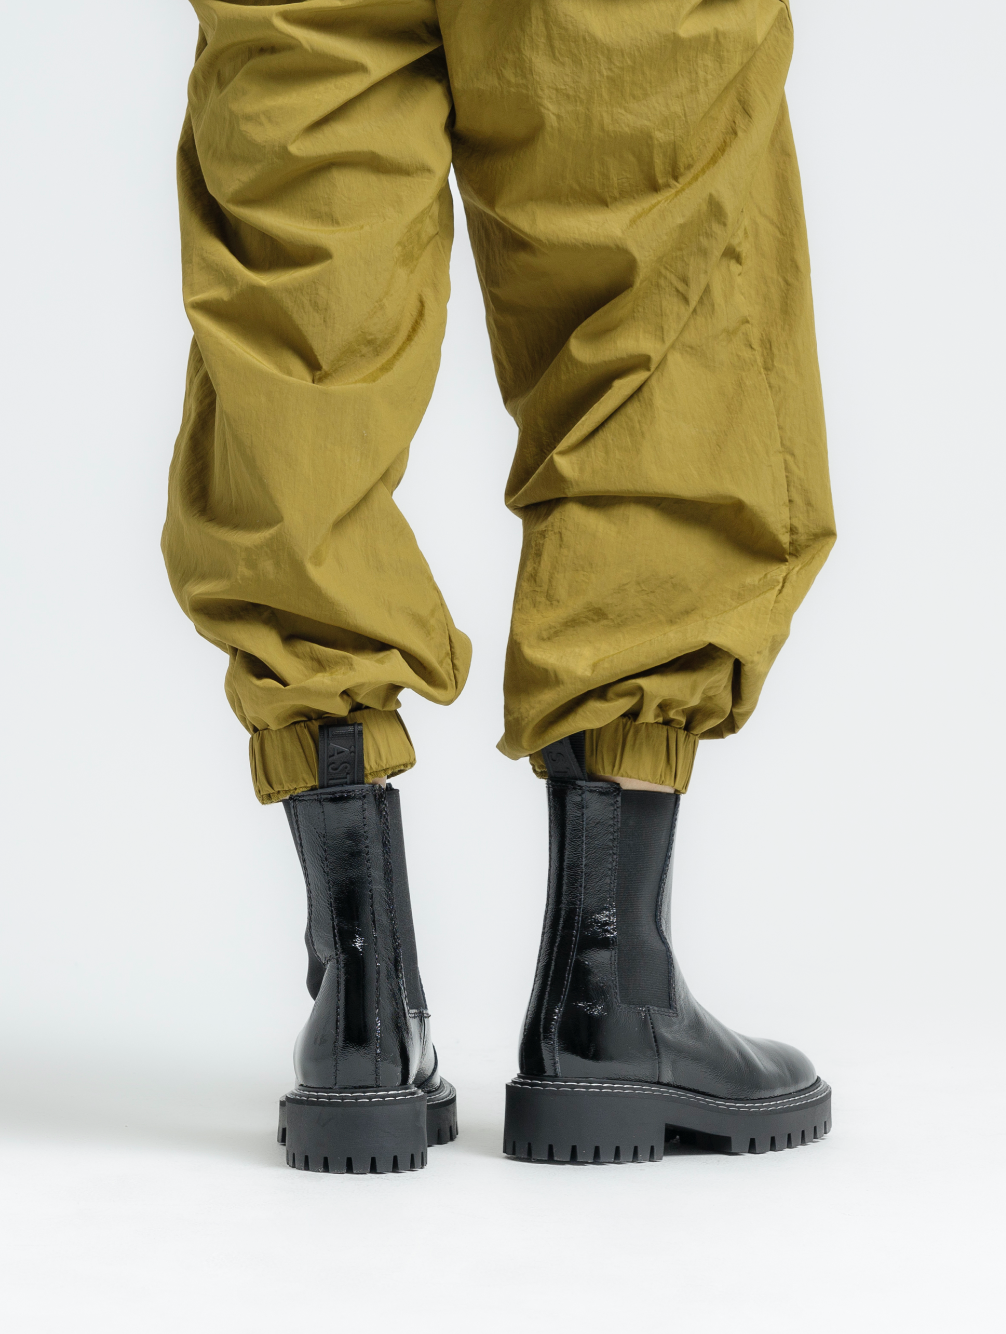 Daze Black Patent Leather Chelsea Boots LAST1677 - 10